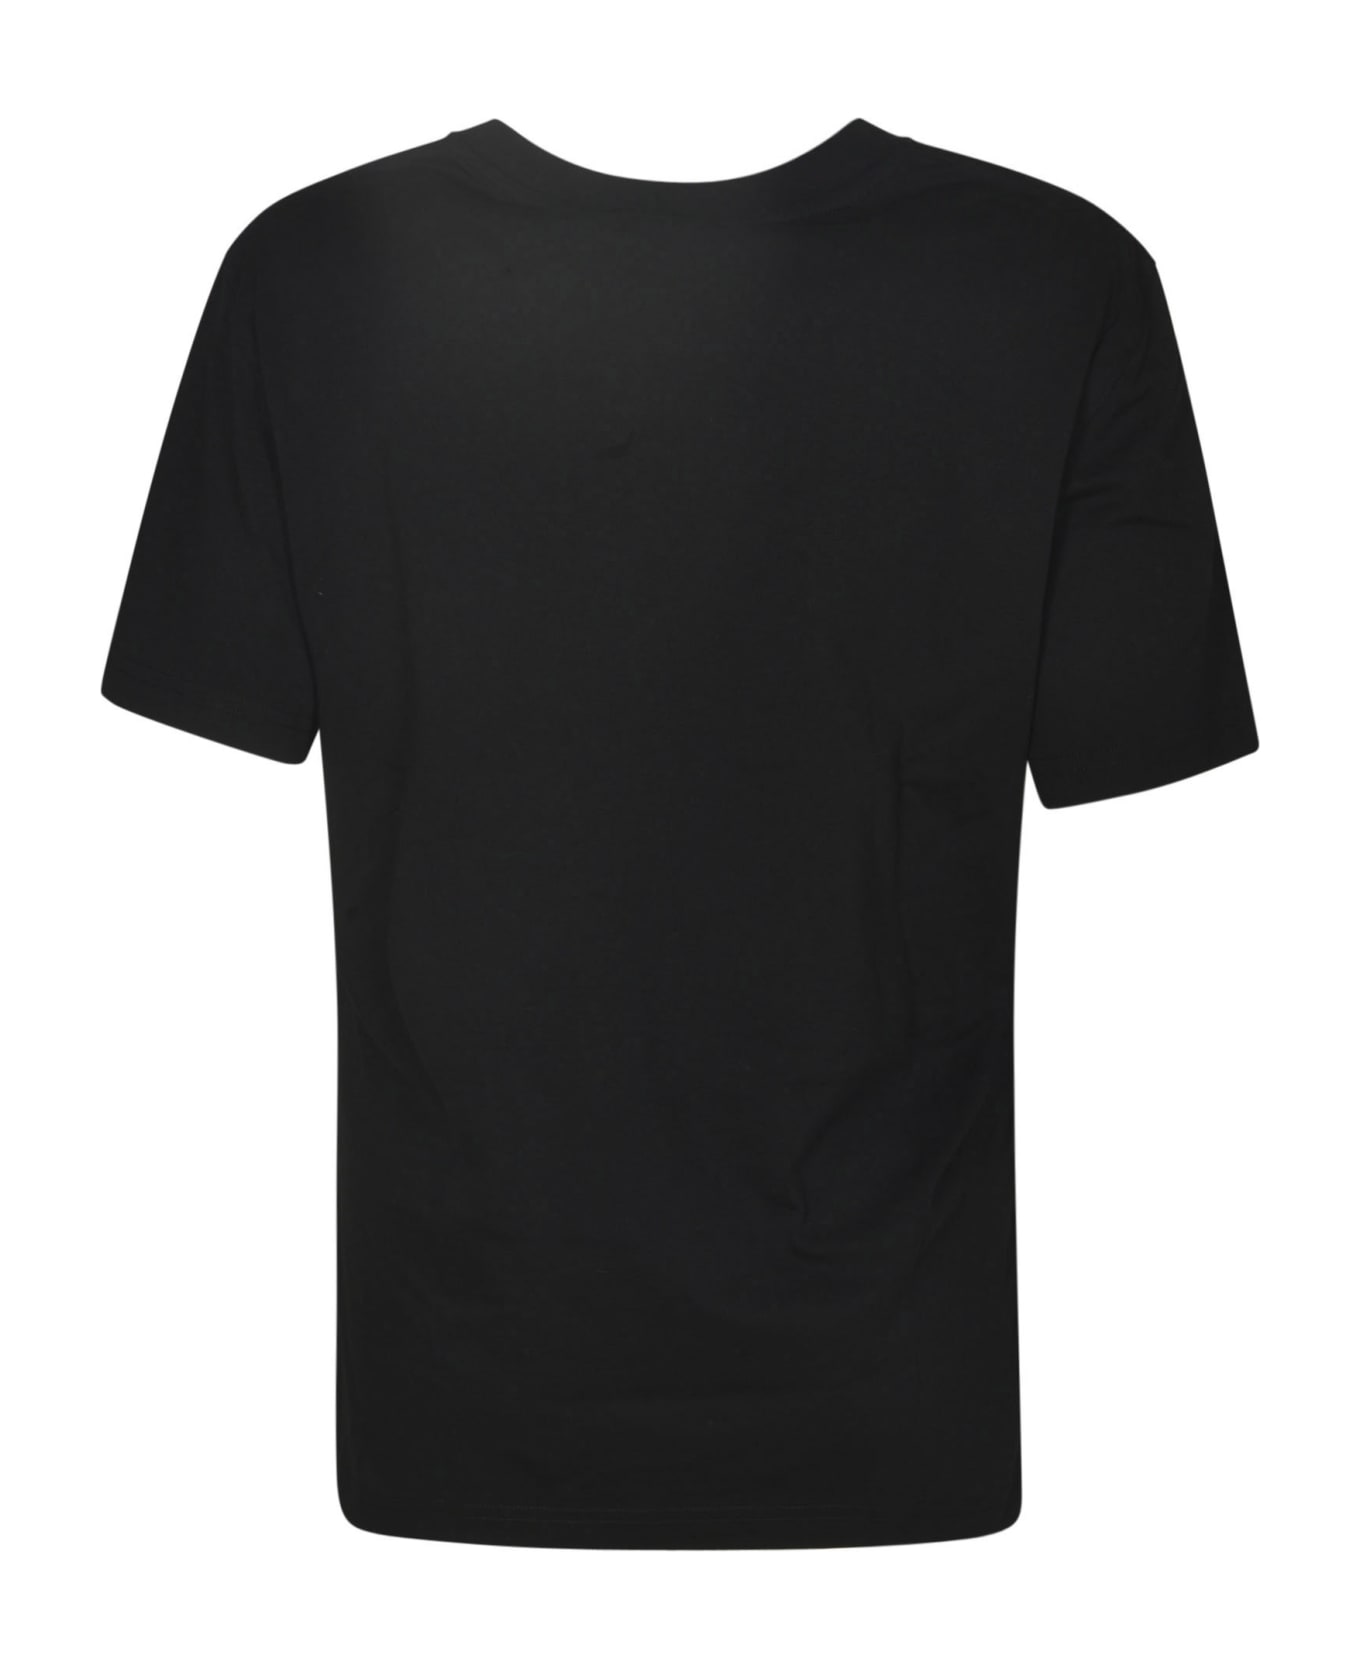 Moschino 40 Years Of Love T-shirt - Black Tシャツ